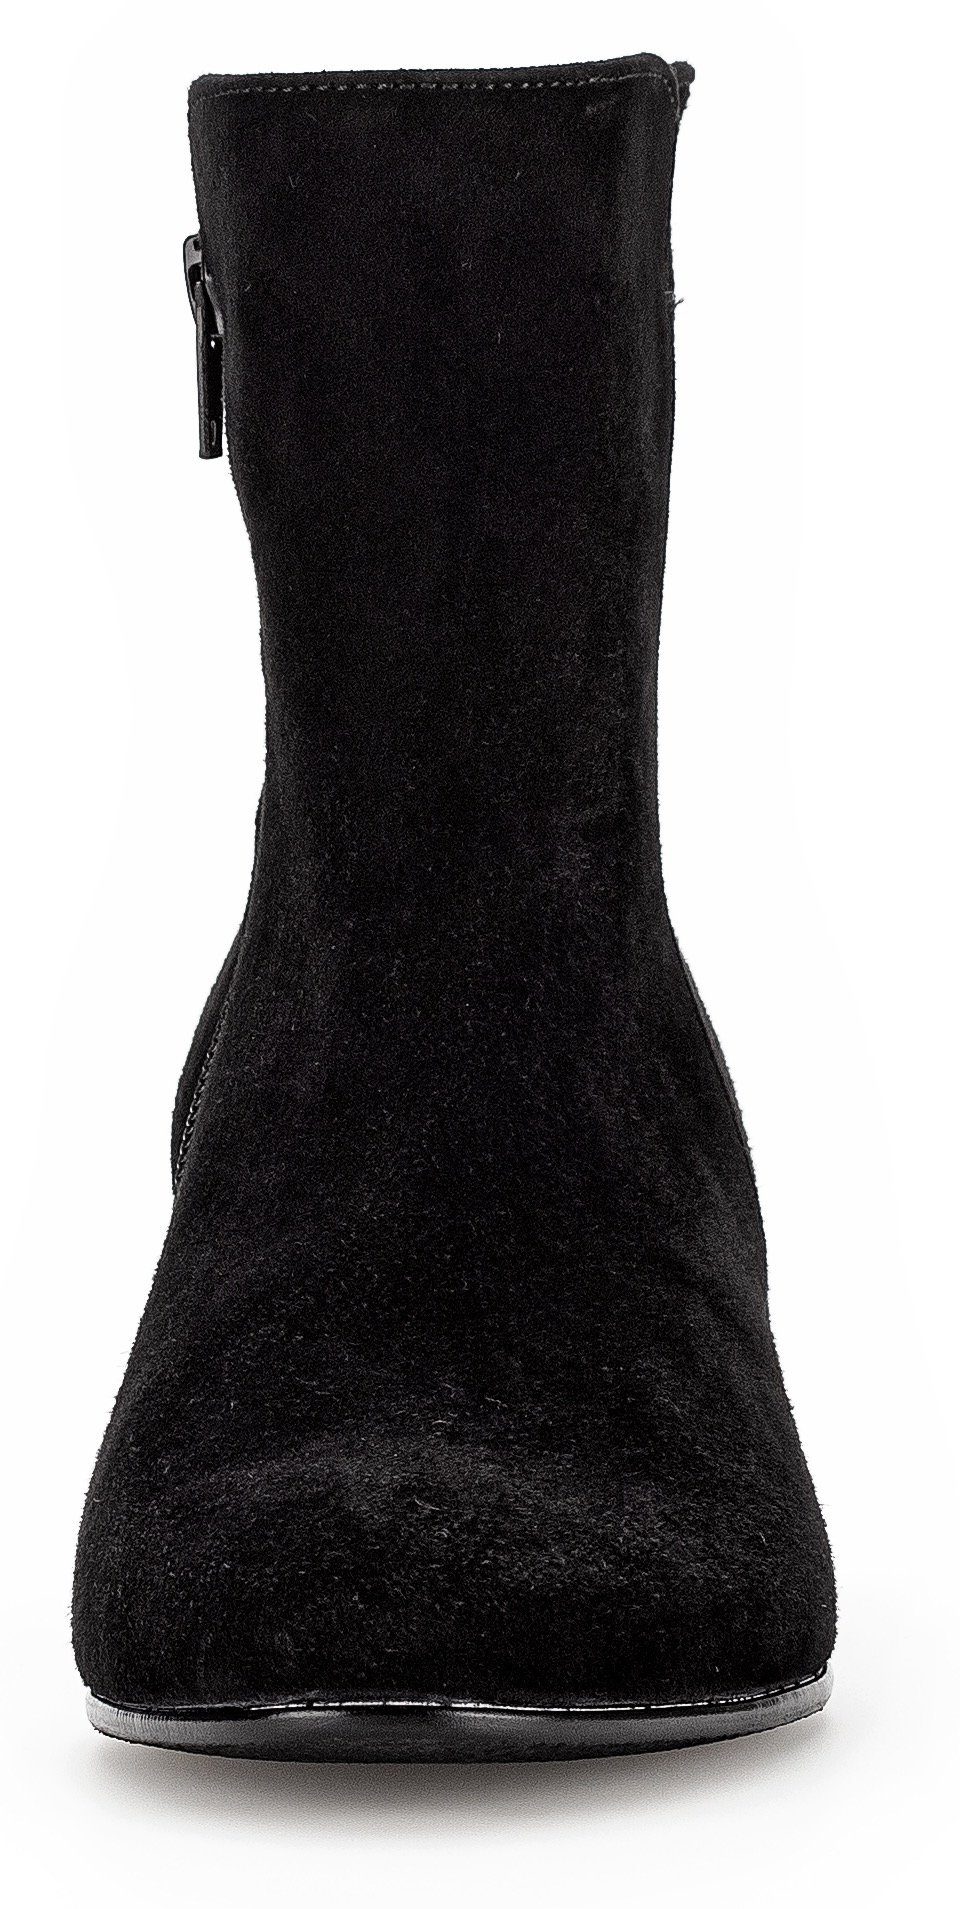 Stiefelette Best mit schwarz Gabor Fitting-Ausstattung